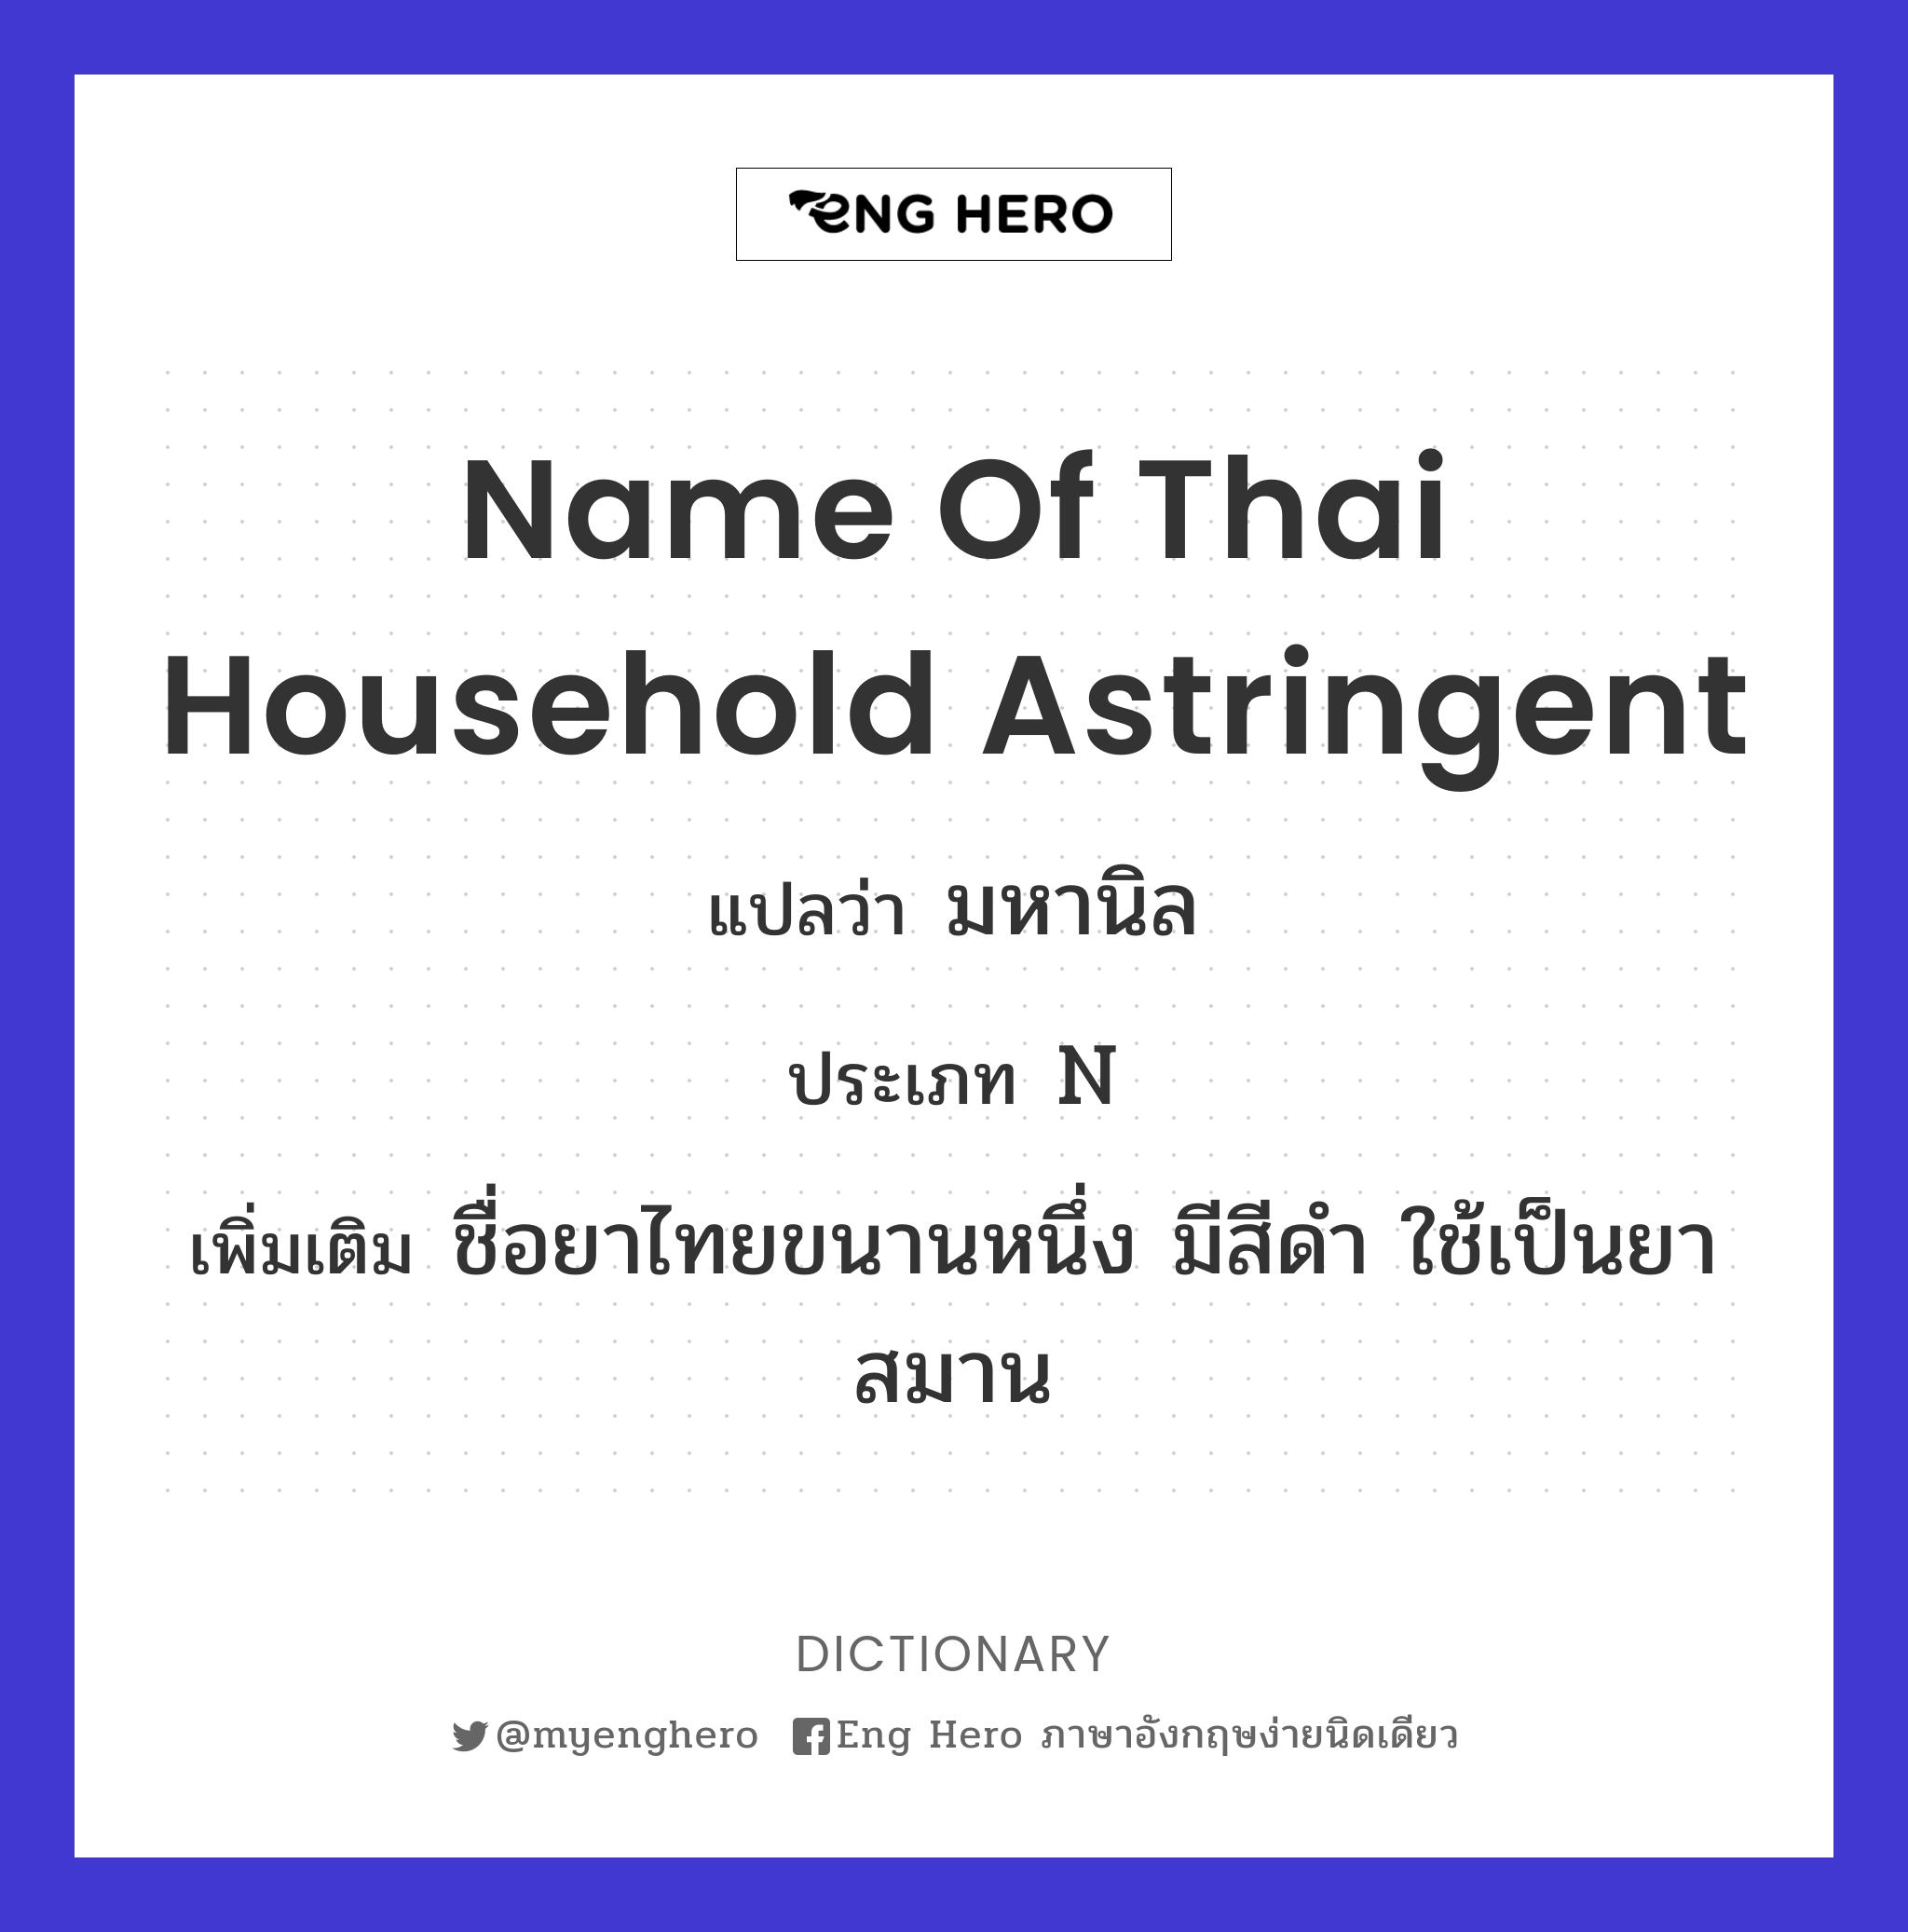 name of Thai household astringent